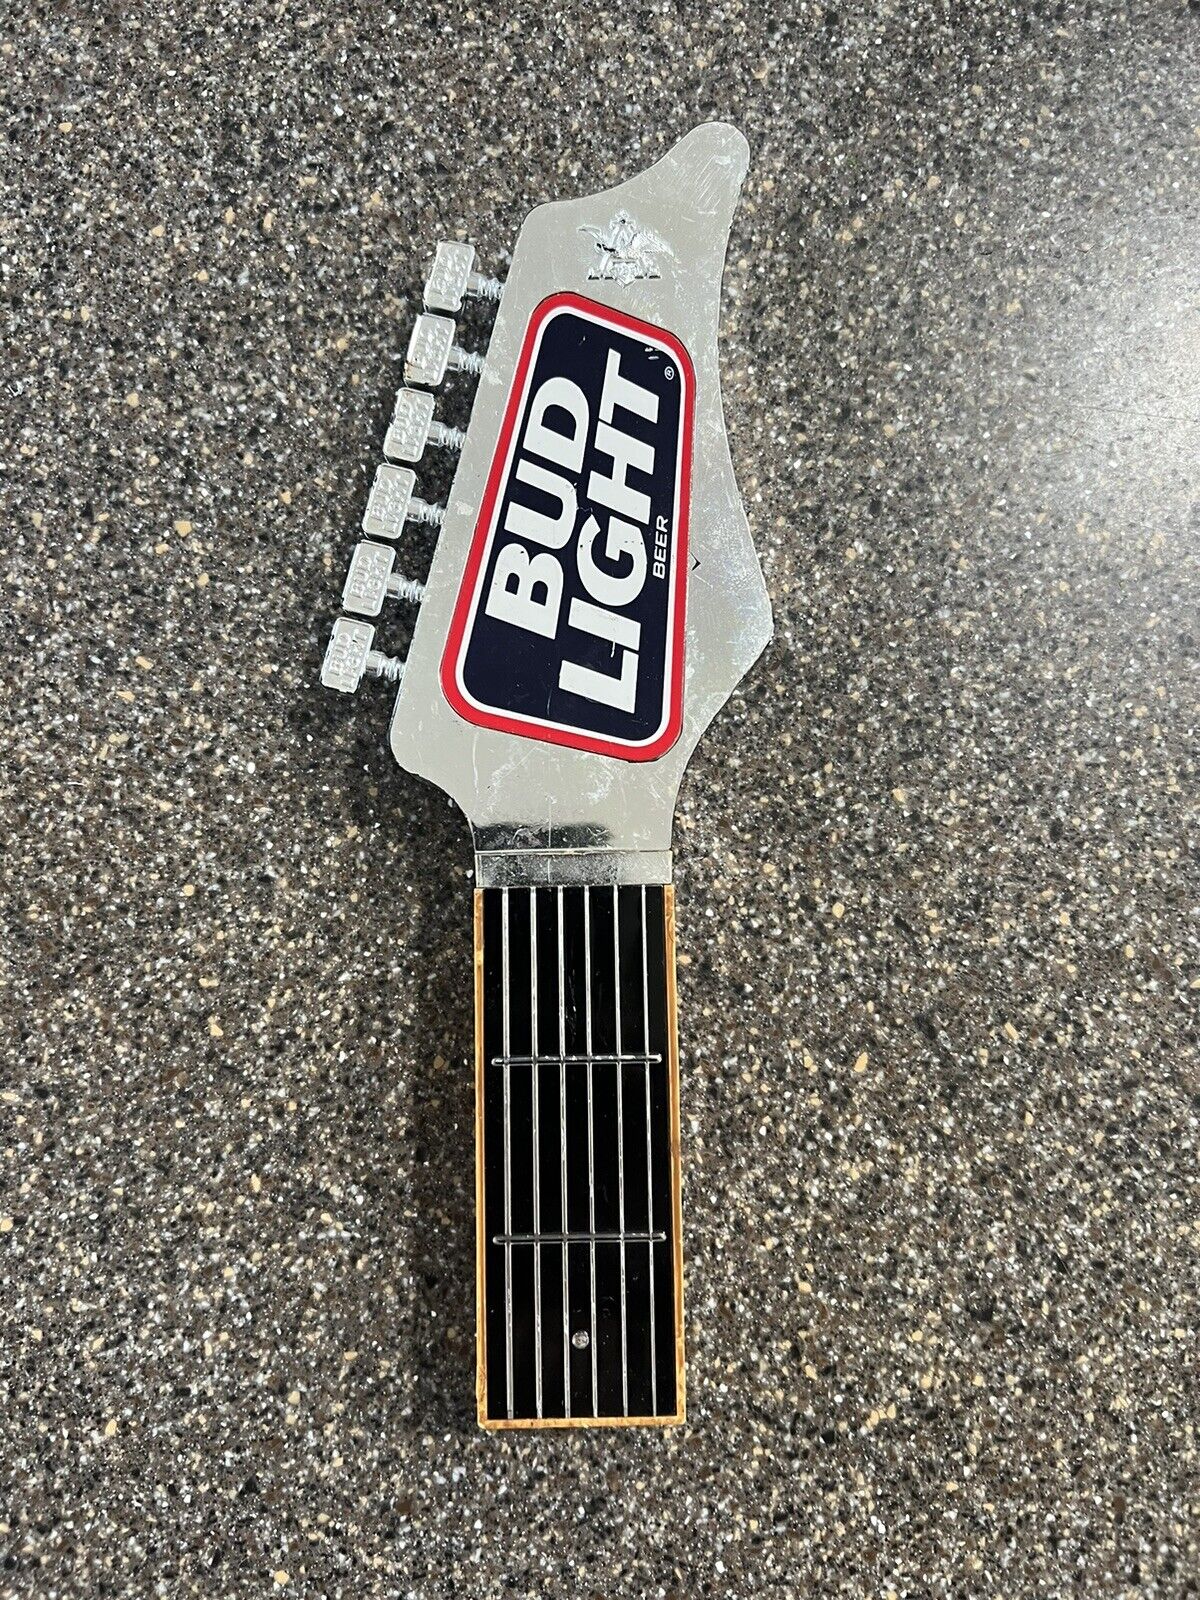 Bud Light Guitar Vintage 10 inch tap handle